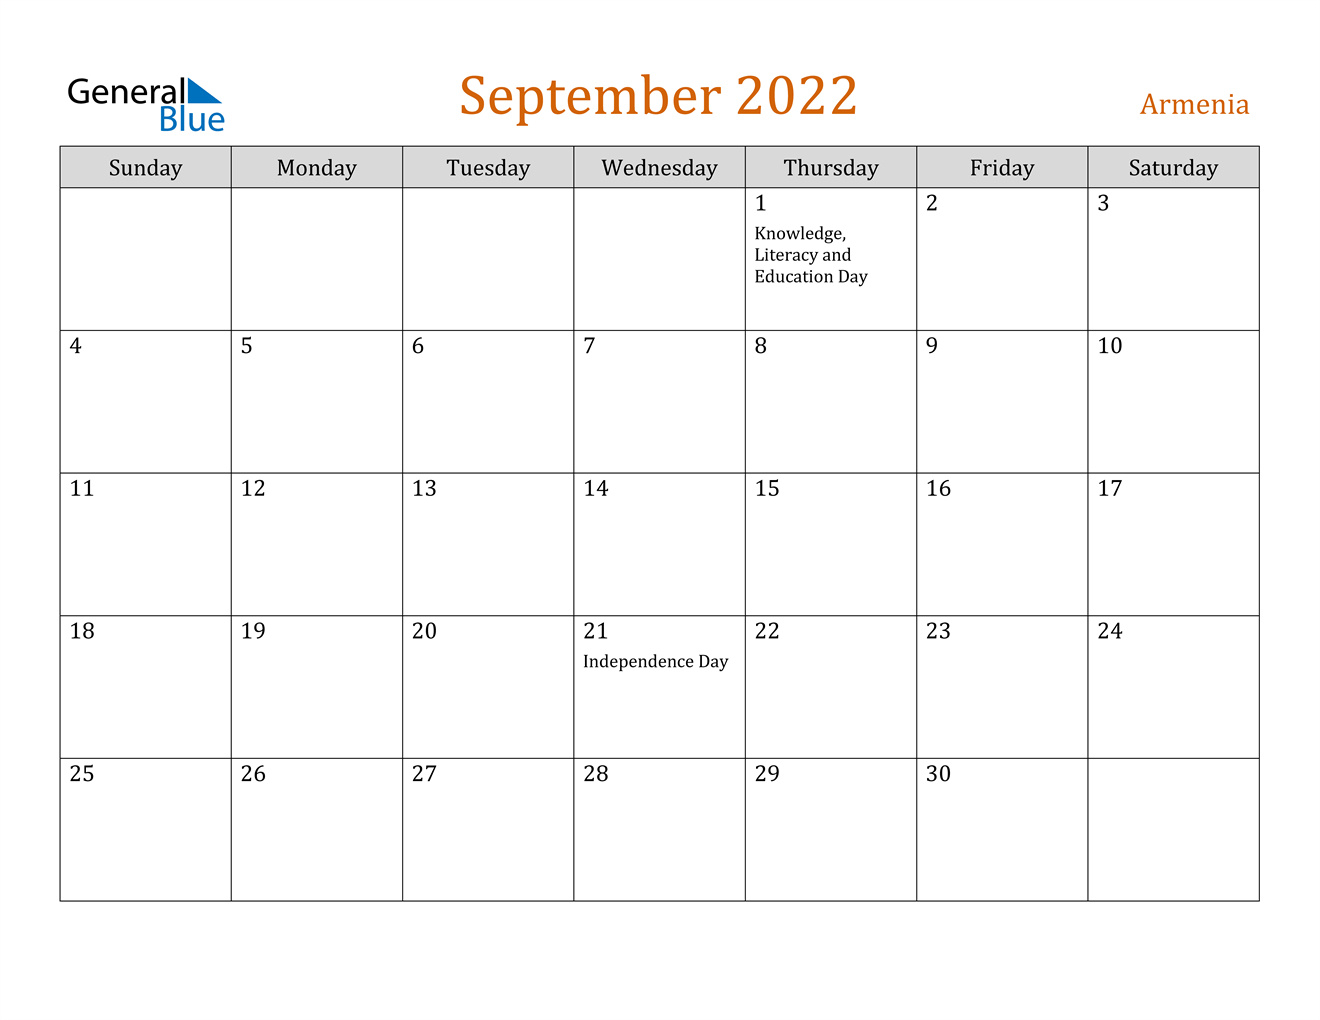 September 2022 Calendar - Armenia